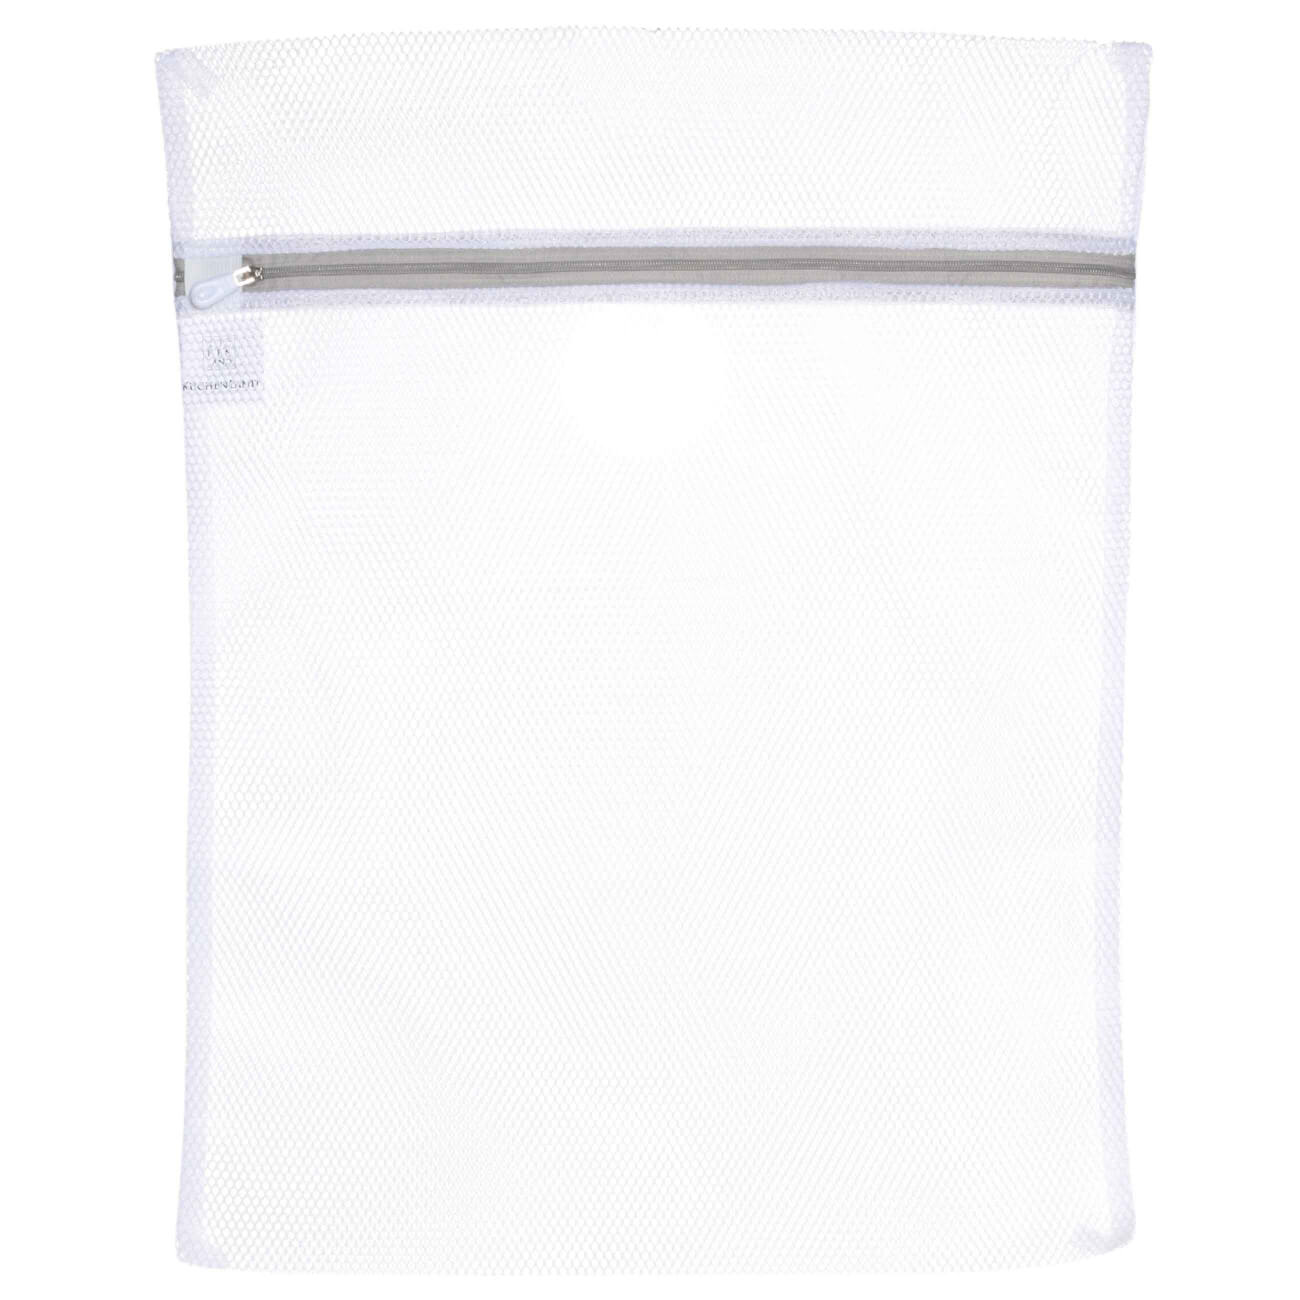 Мешок для стирки одежды, 40х50 см, полиэстер, бело-серый, Safety